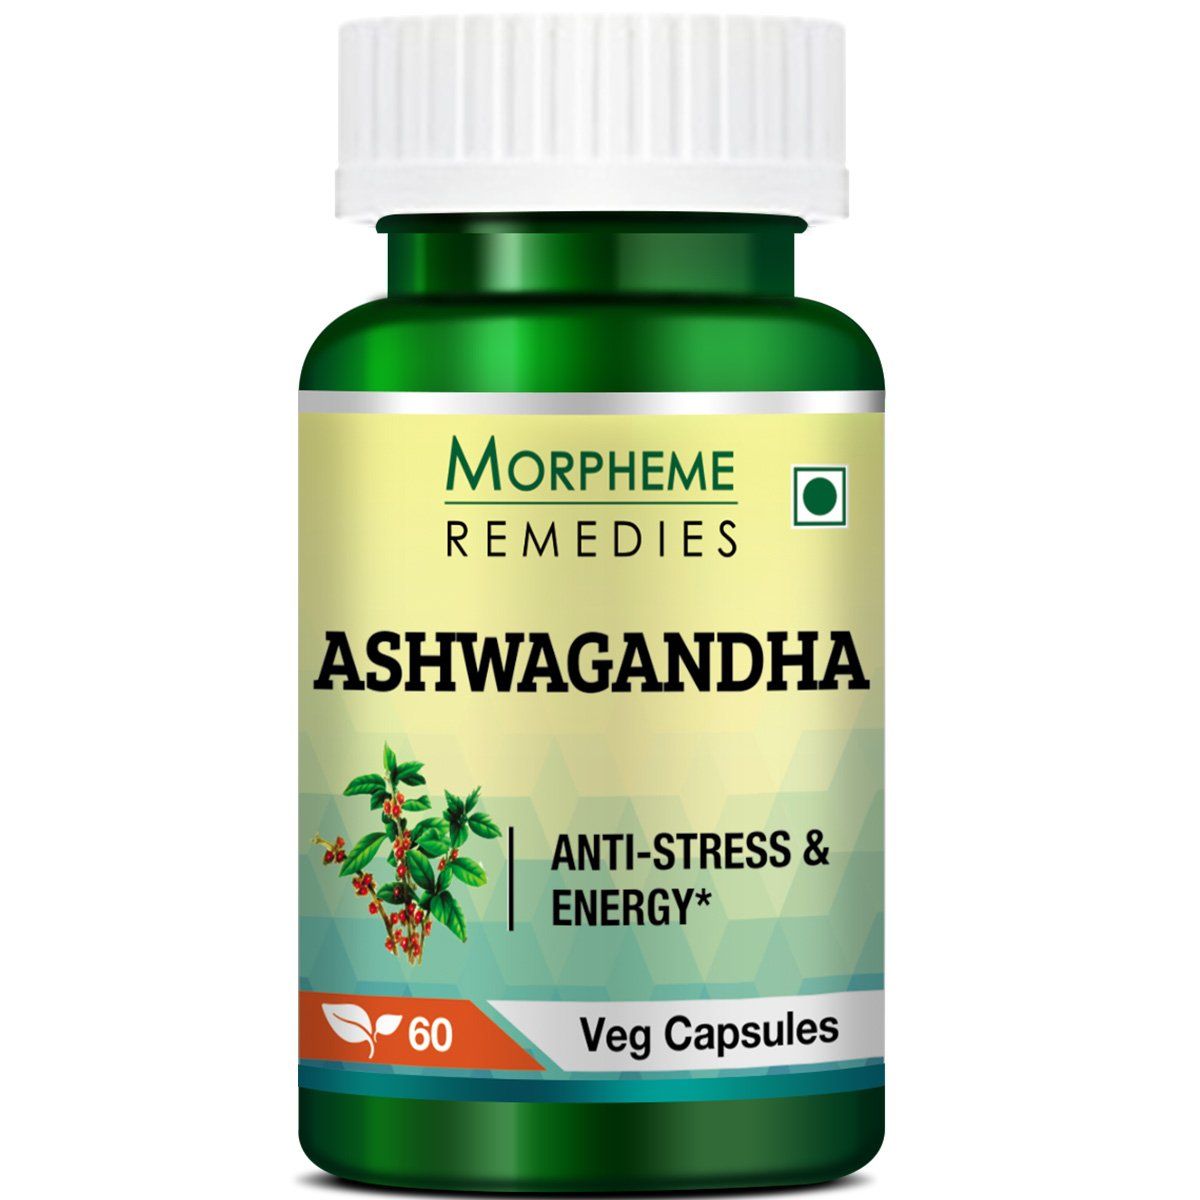 Morpheme Remedies Ashwagandha Image